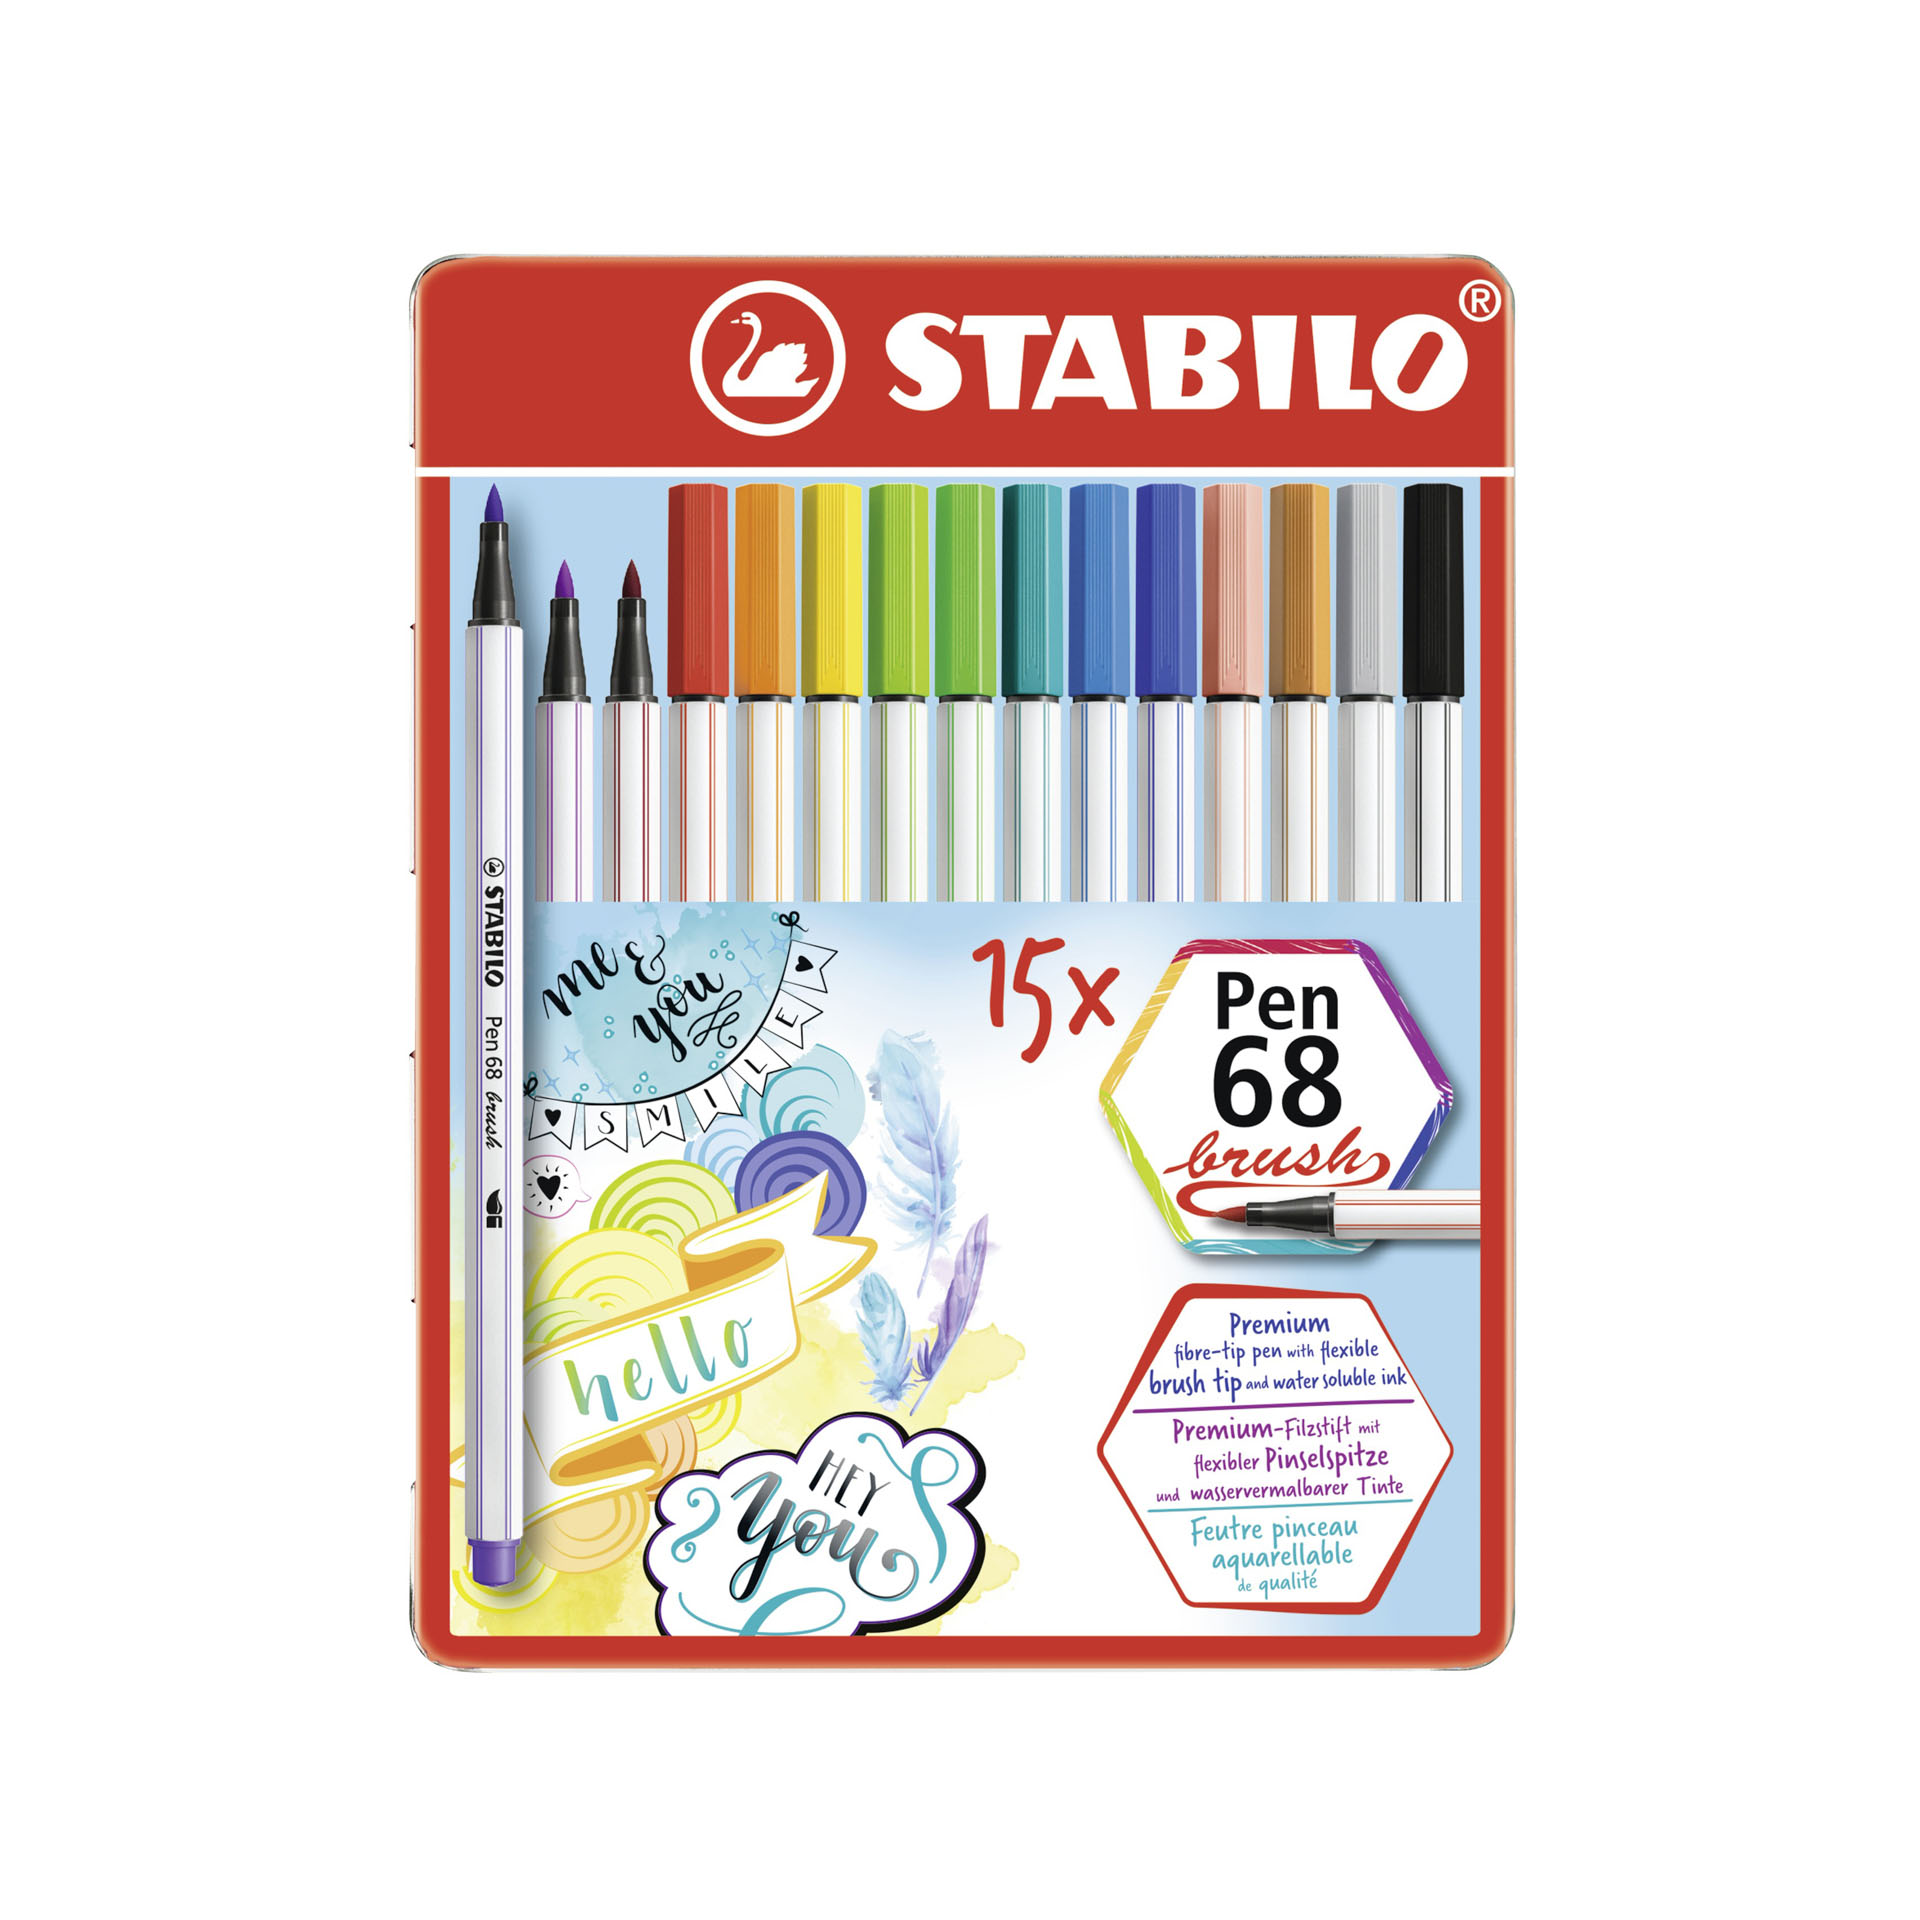 Pennarello Premium con punta a pennello-STABILO Pen 68 brush-Scatola in metallo, , large